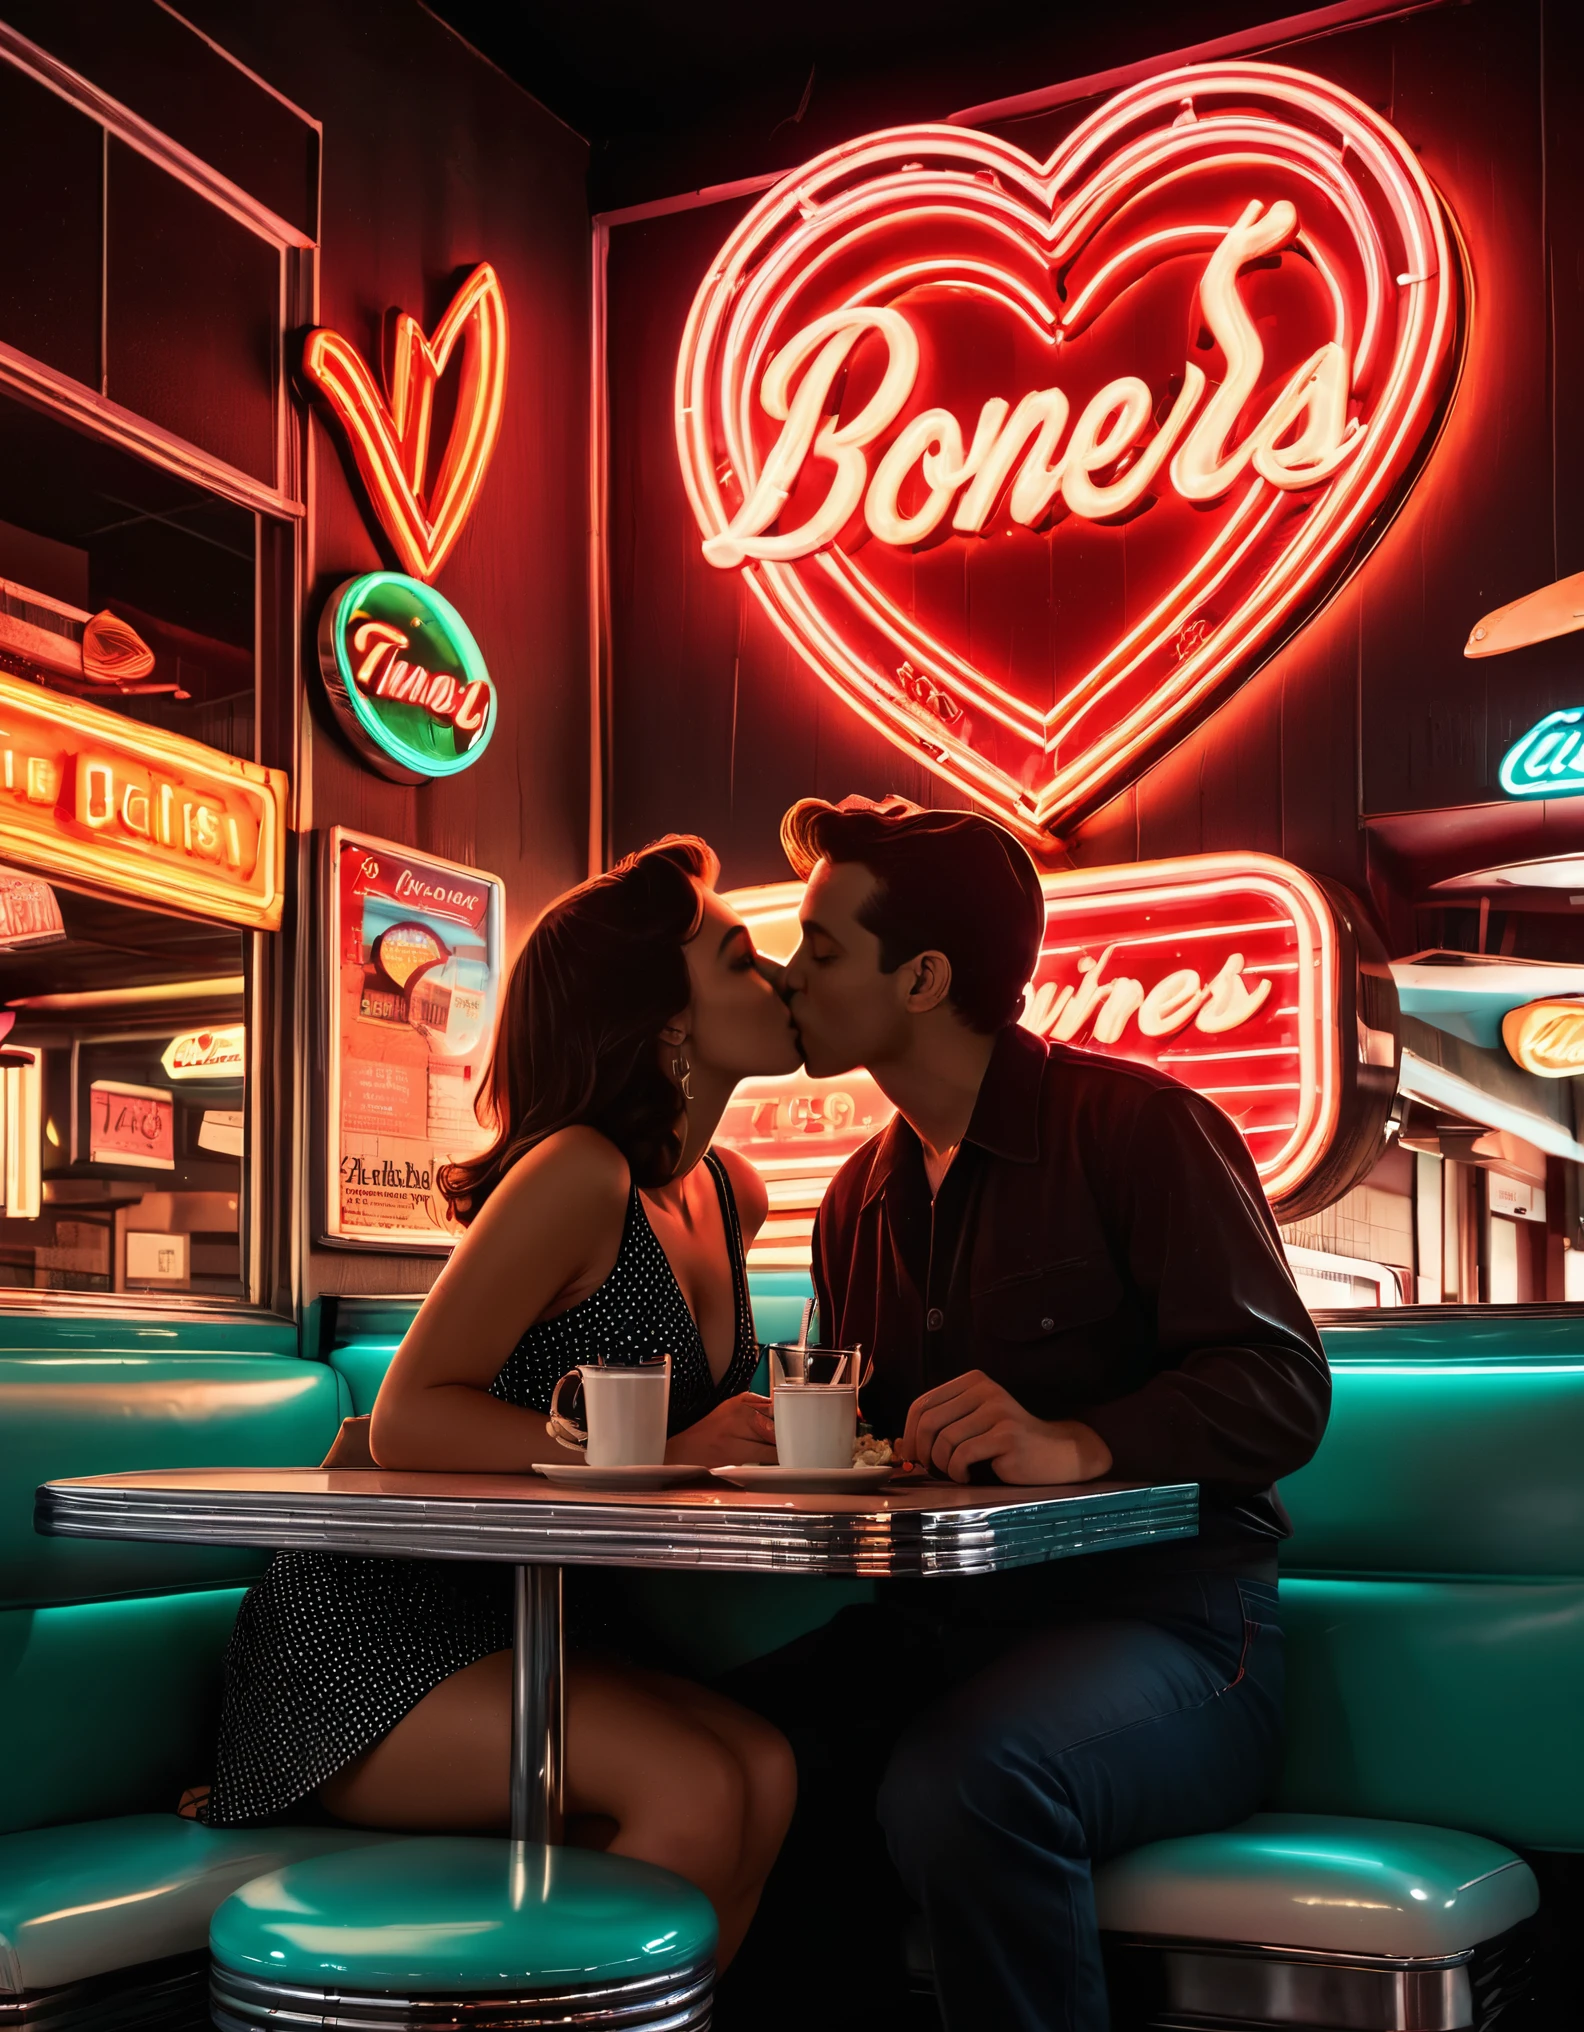 ผลงานศิลปะนีออนย้อนยุคที่มีภาพเงาของคู่รักจูบกันที่ร้านอาหาร, โดยมีป้ายไฟนีออนและรูปหัวใจอยู่ด้านหลัง, ชวนให้นึกถึงกลิ่นอายของยุค 1950